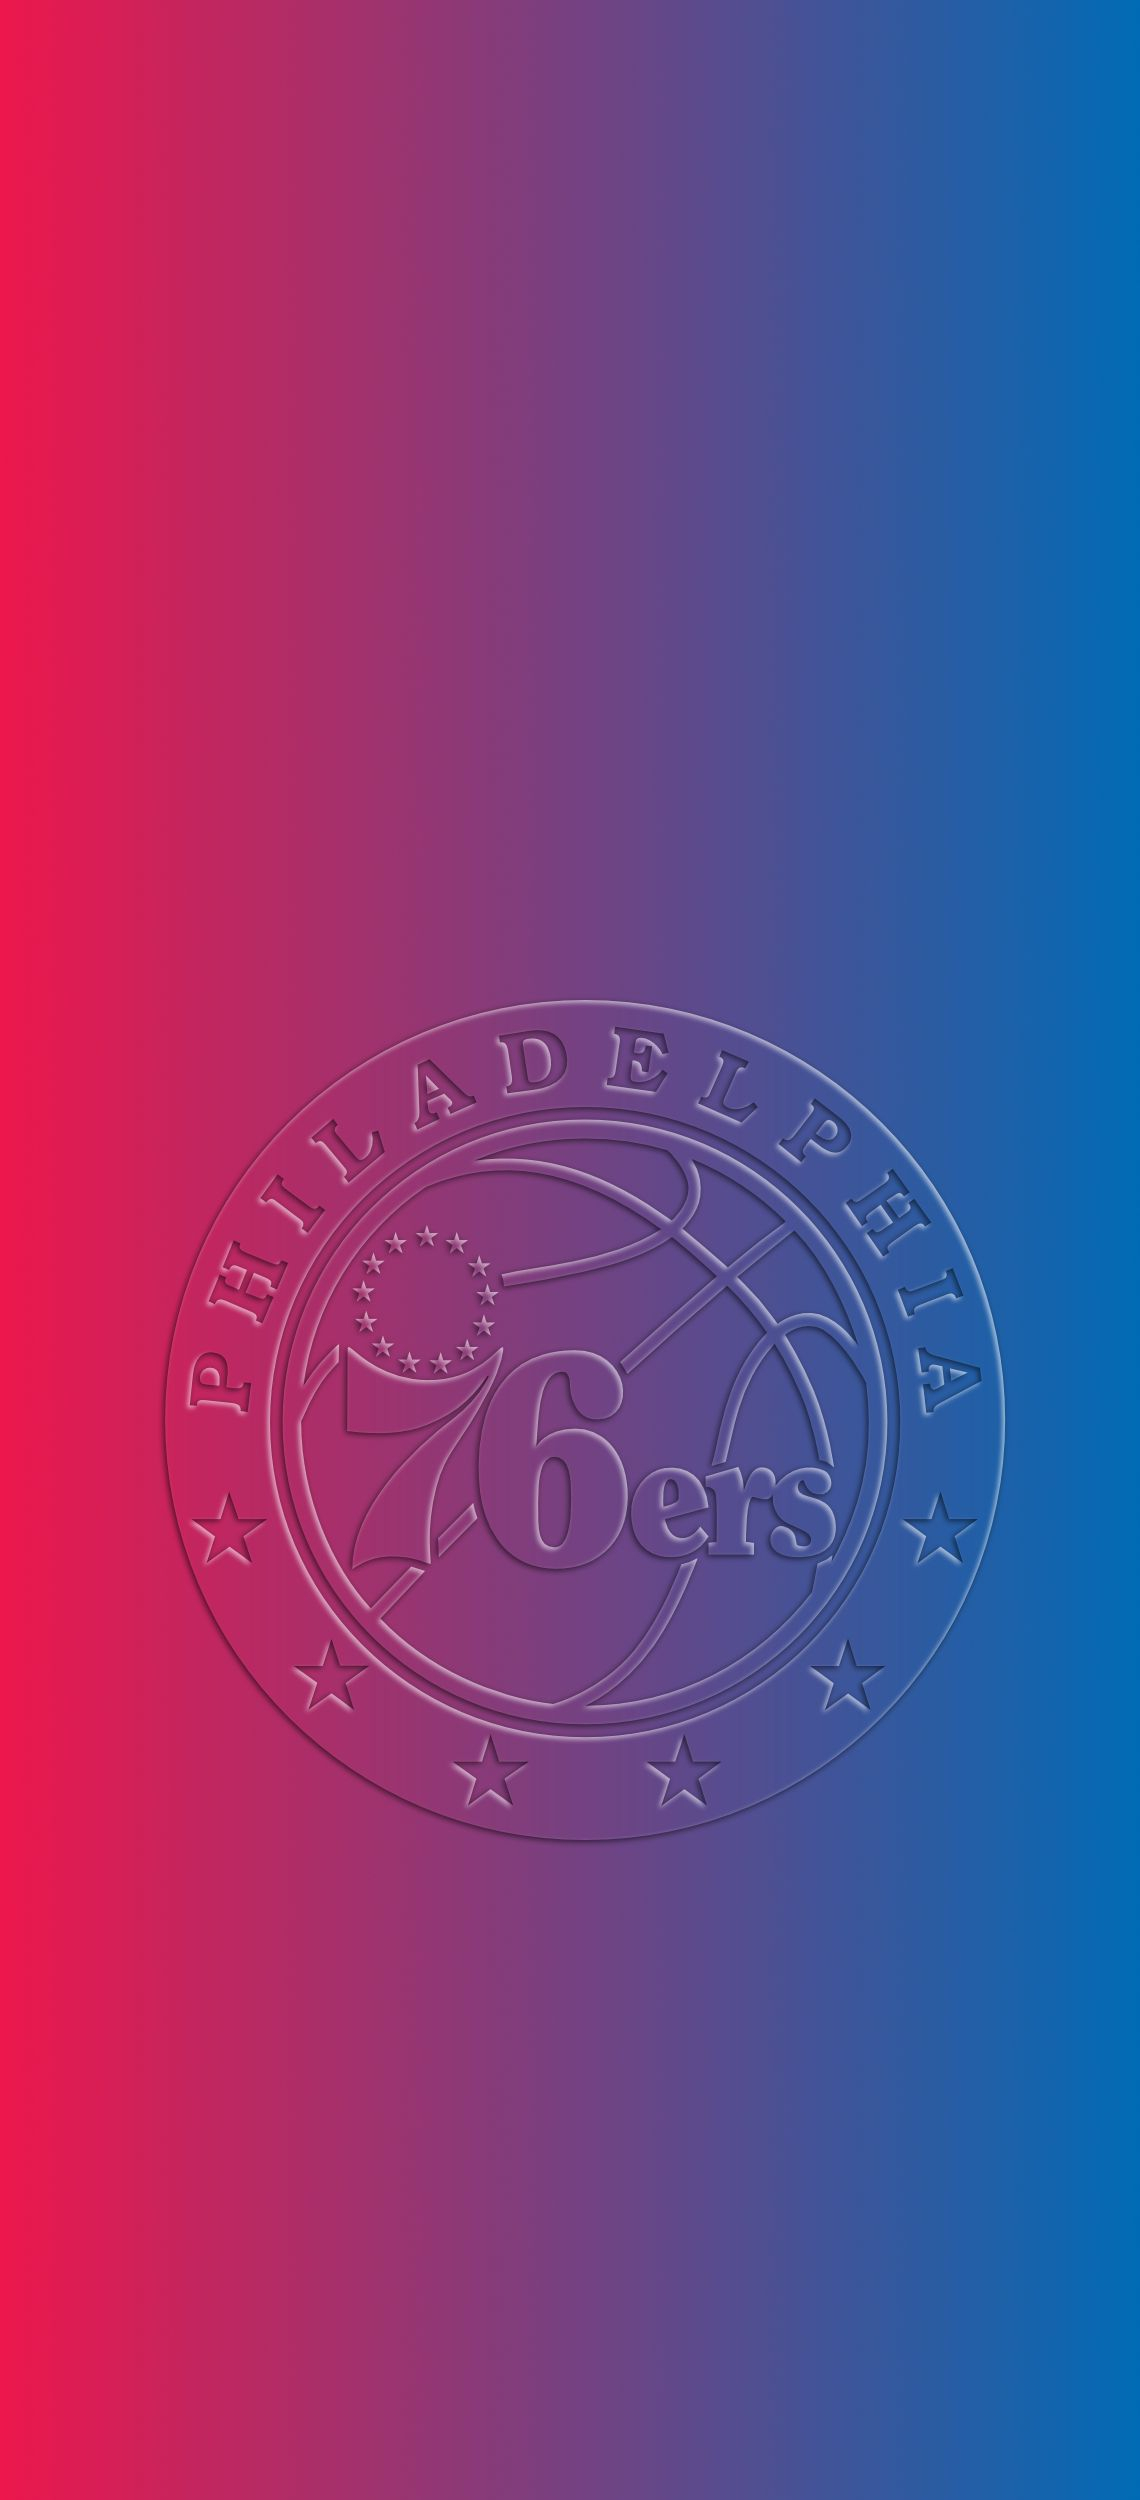 1140x2500 Philadelphia 76ers 3D Wallpaper | Philadelphia 76ers, 76ers, Basketball wallpaper